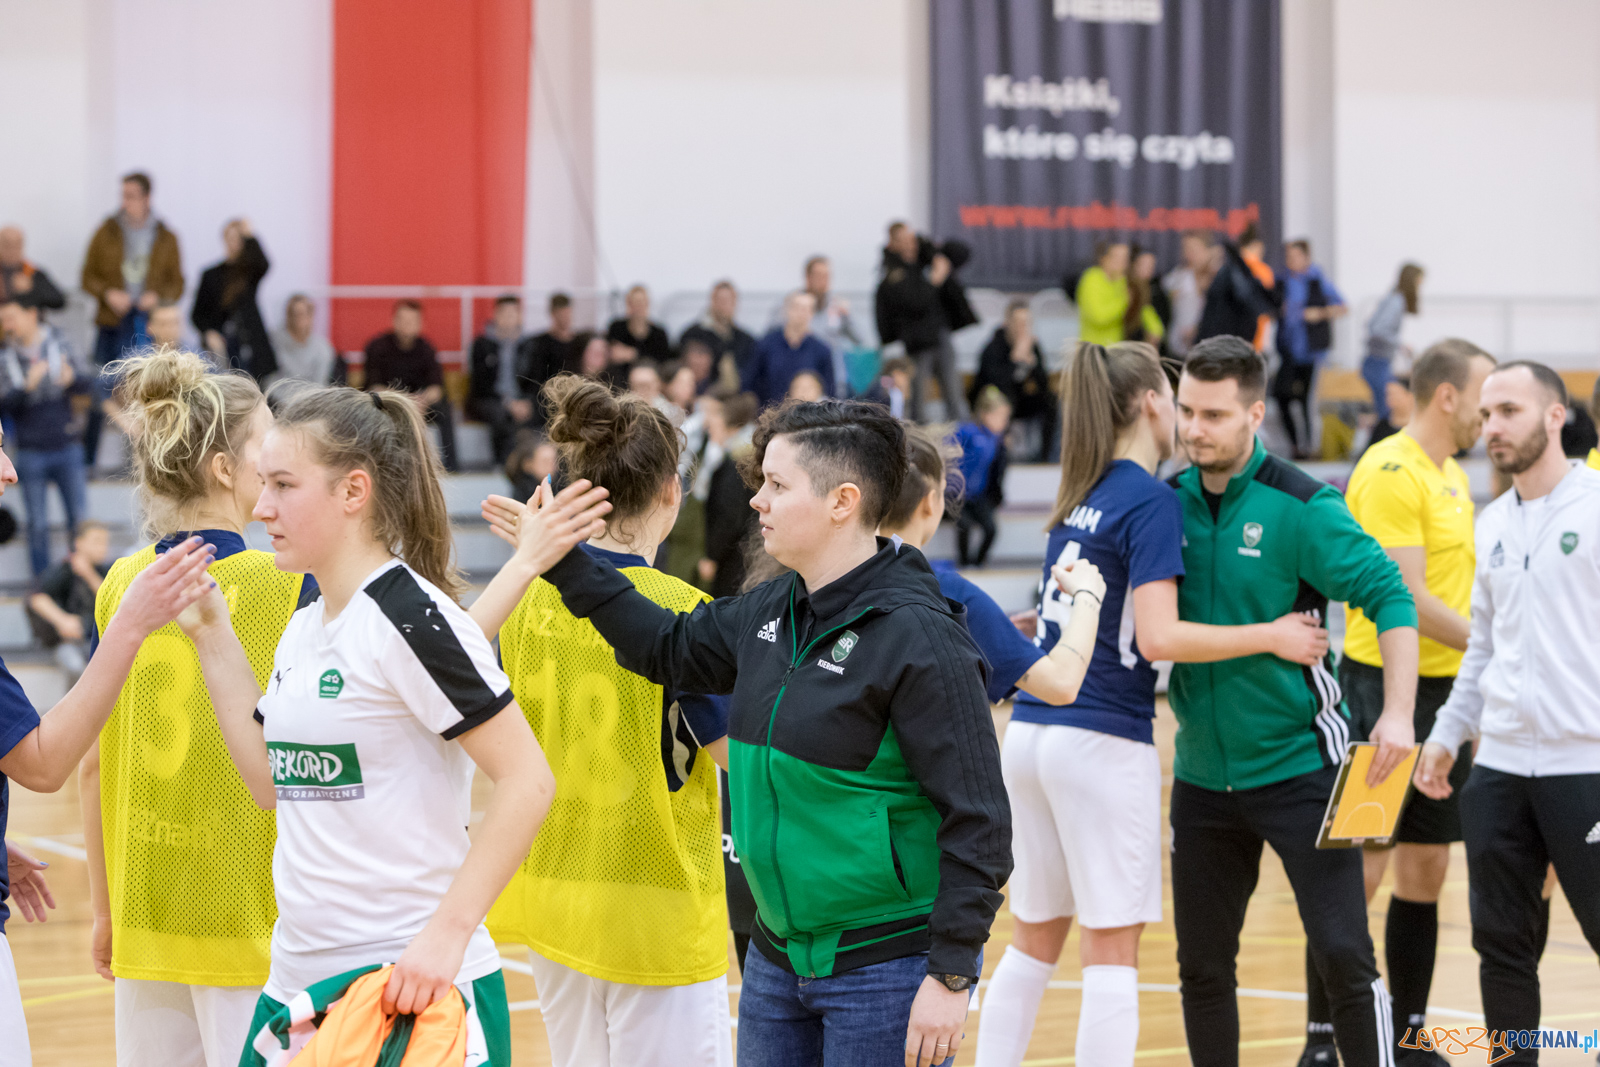 AZS UAM POZNAŃ Futsal Kobiet - BTS Rekord  Foto: lepszyPOZNAN.pl/Piotr Rychter